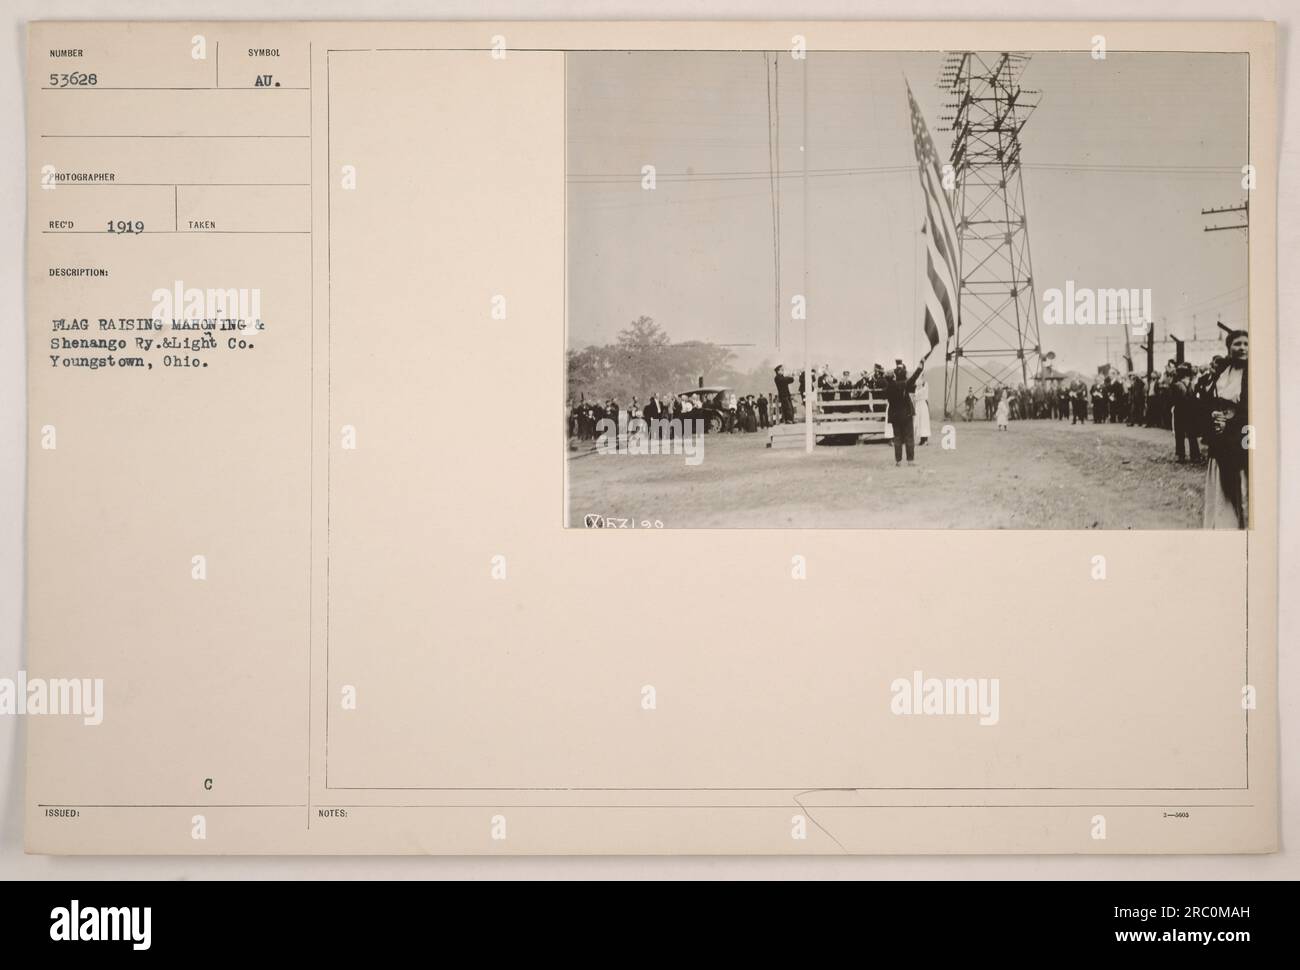 Une photographie de 1919 montre une cérémonie de levée de drapeau à la Mahoning & Shenango Railway & Light Company à Youngstown, Ohio. La photo capture le moment symbolique de lever le drapeau. Les notes mentionnent XORZIO 3 comme détails supplémentaires. Banque D'Images